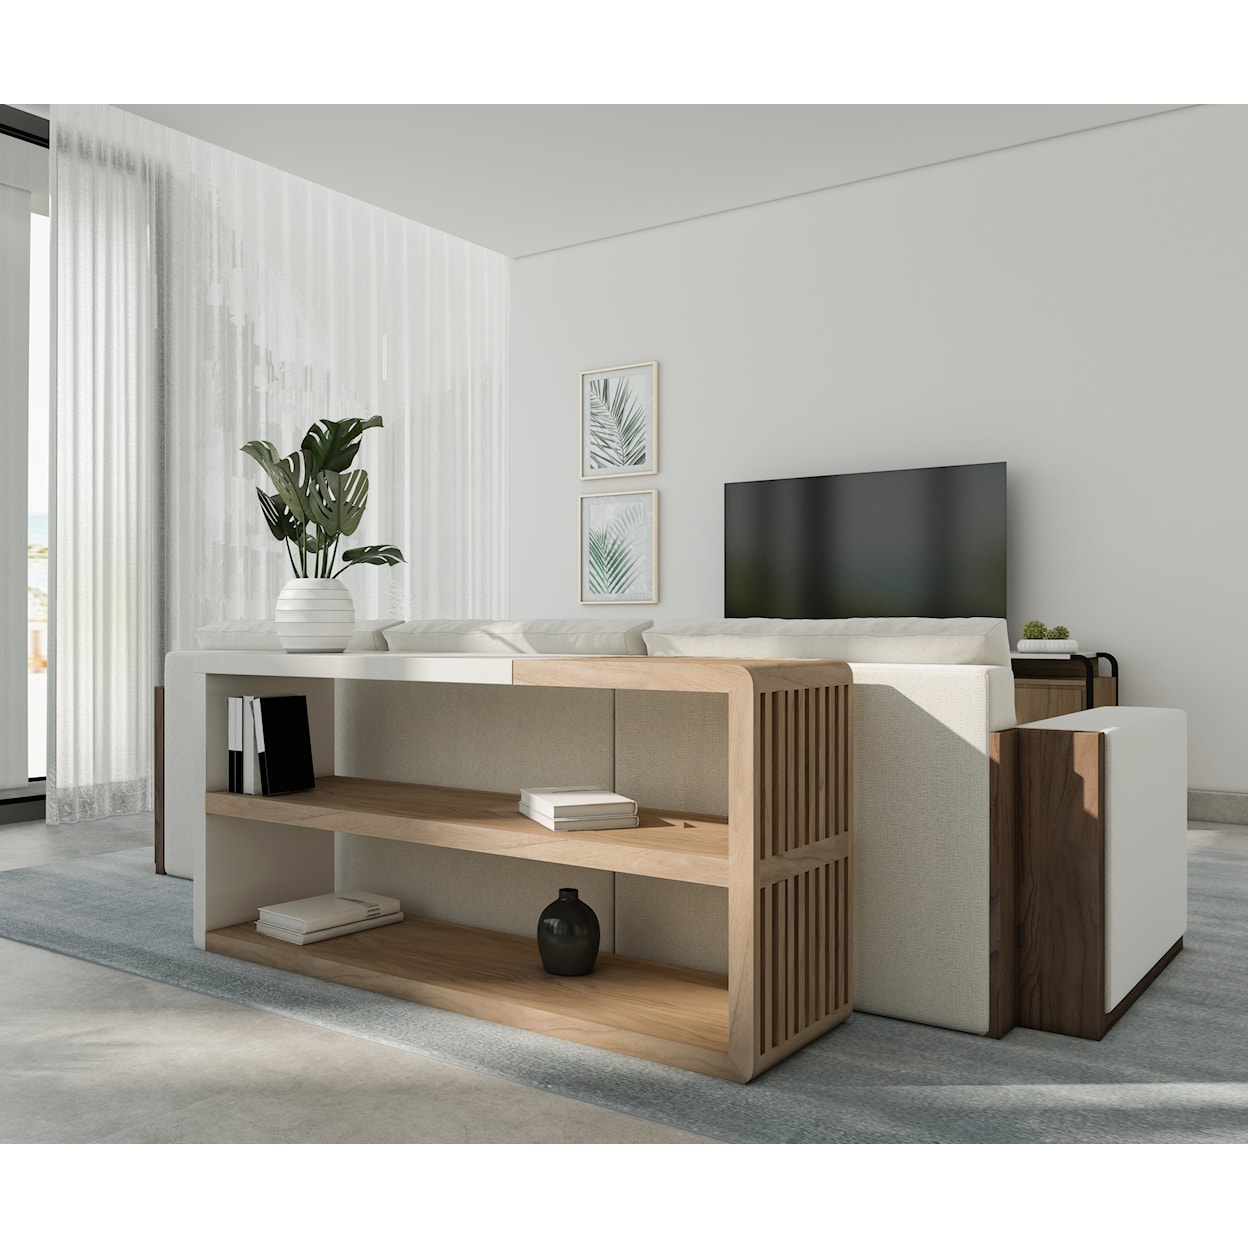 A.R.T. Furniture Inc Portico Two-Tone Console Table